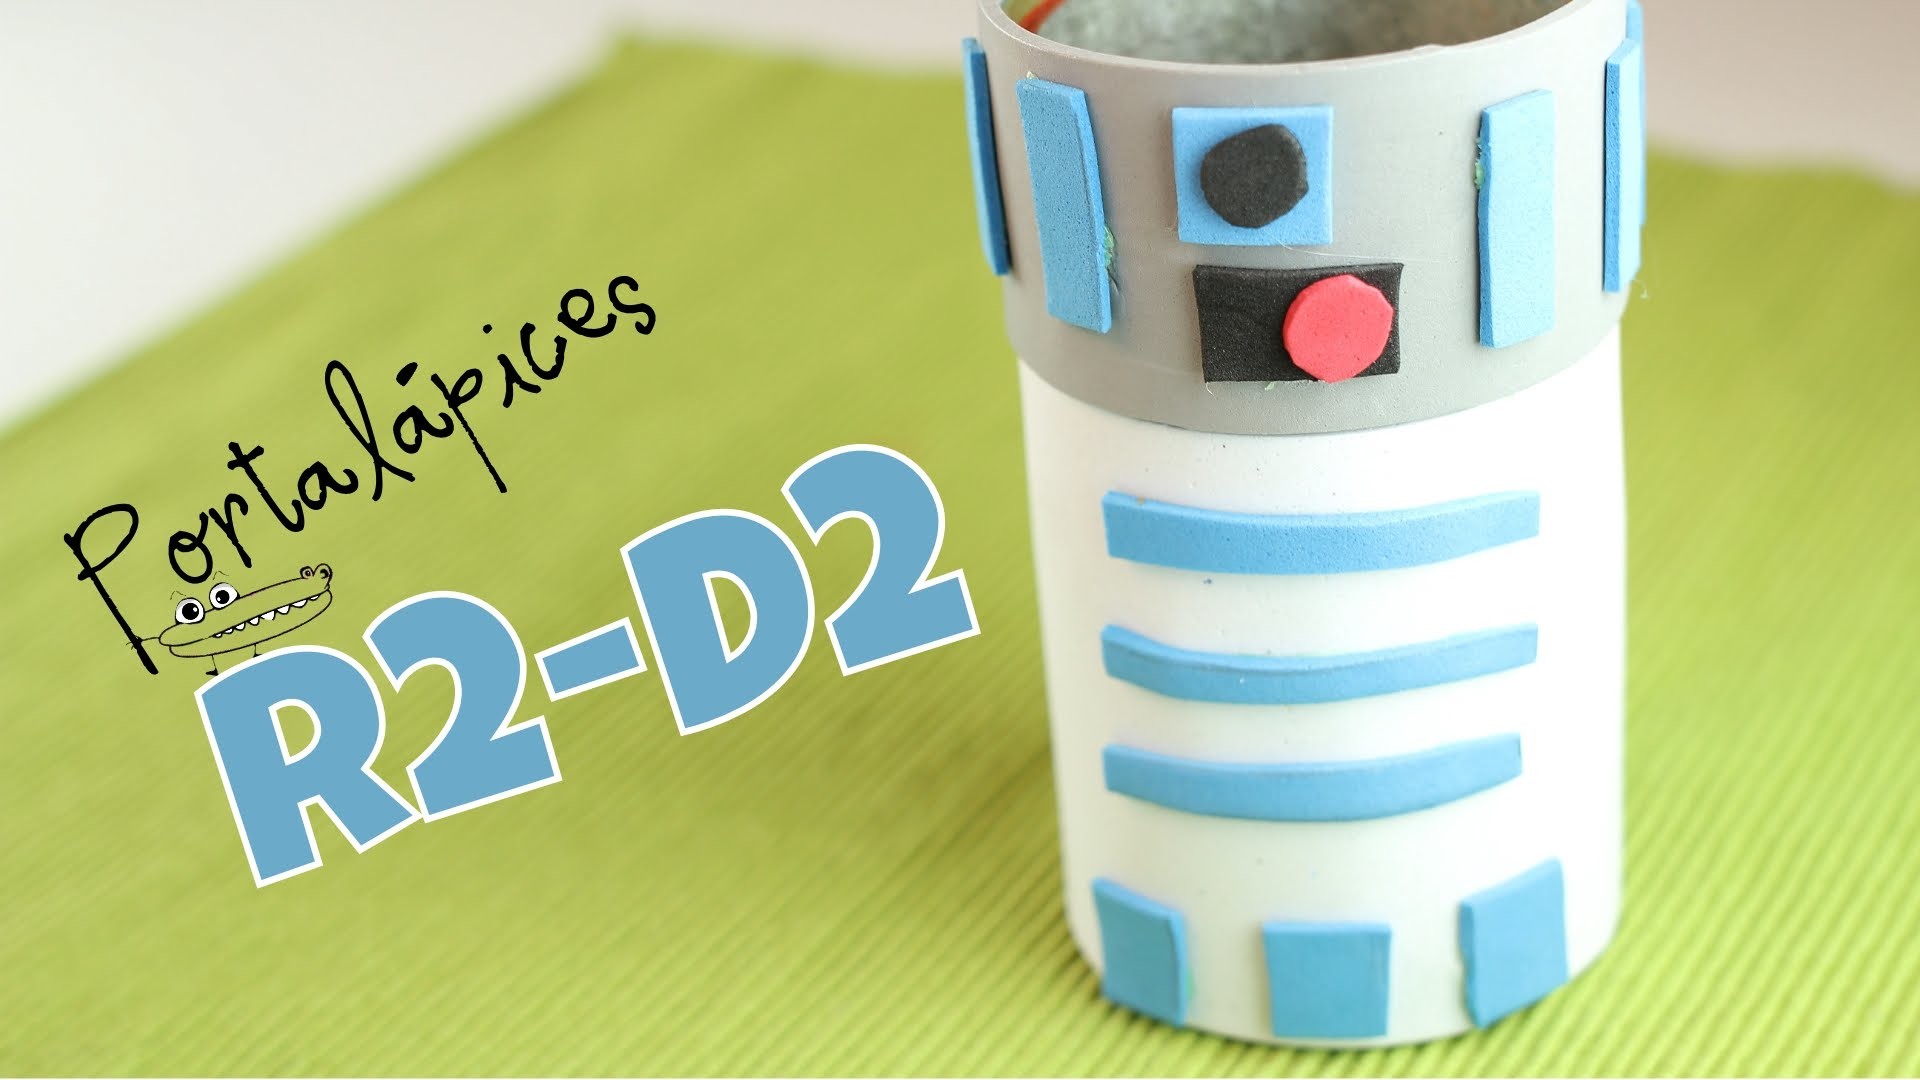 Lapicero R2 D2